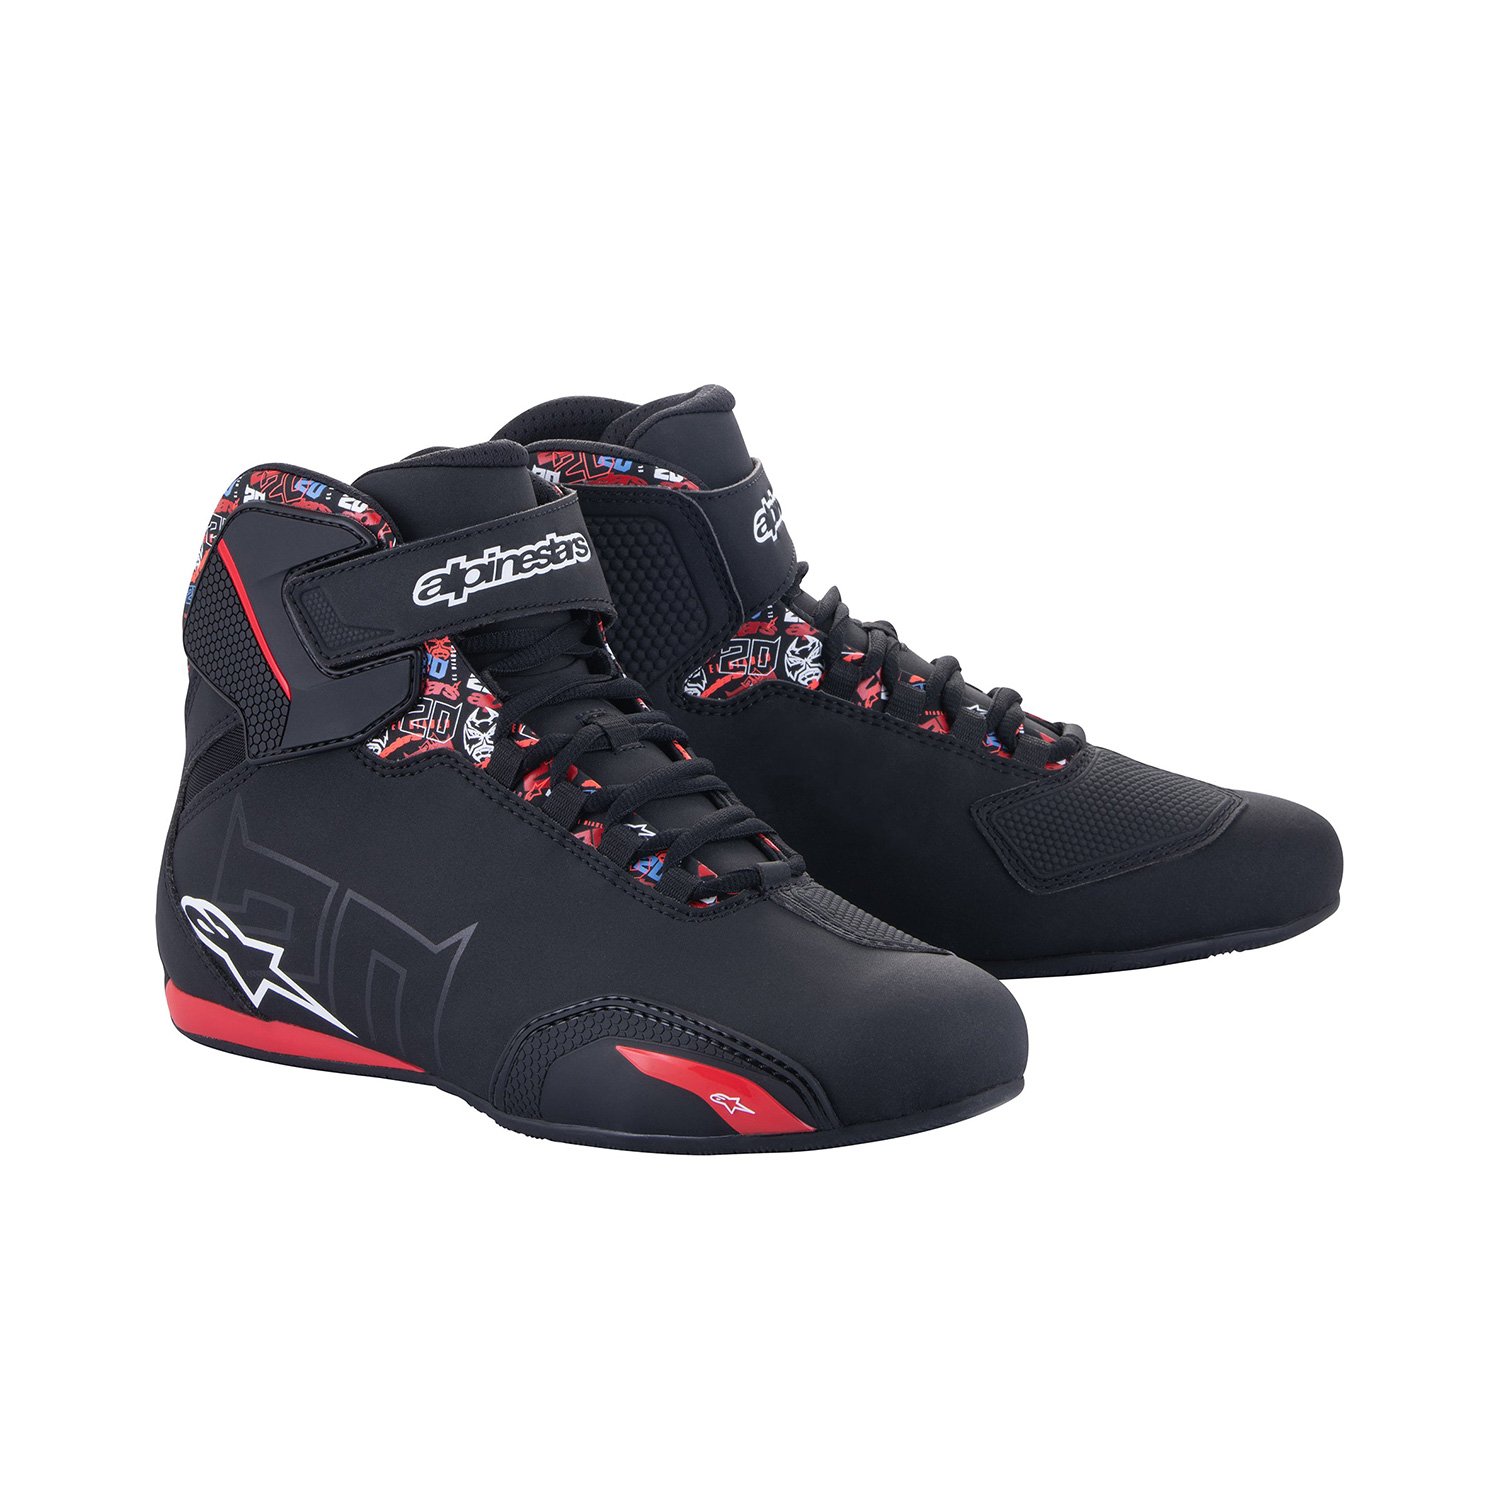 Image of Alpinestars FQ20 Sektor Shoes Black Bright Red Size US 65 EN